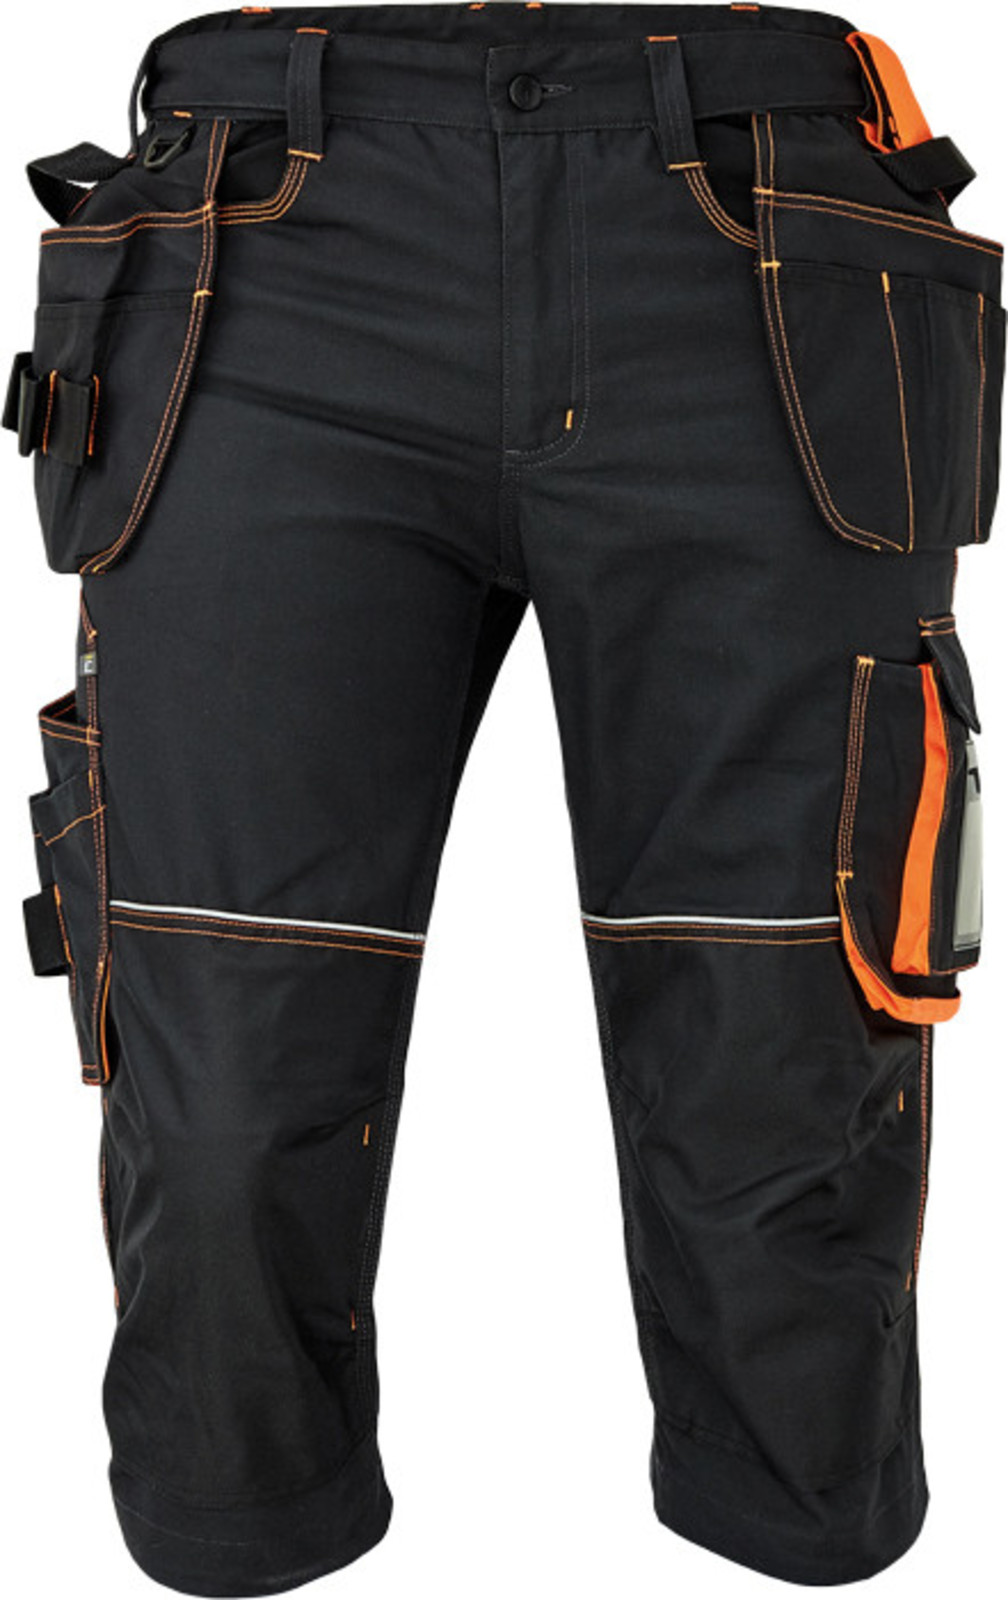 Pánske pracovné 3/4 nohavice Cerva Knoxfield 320 - veľkosť: 60, farba: antracit/oranžová